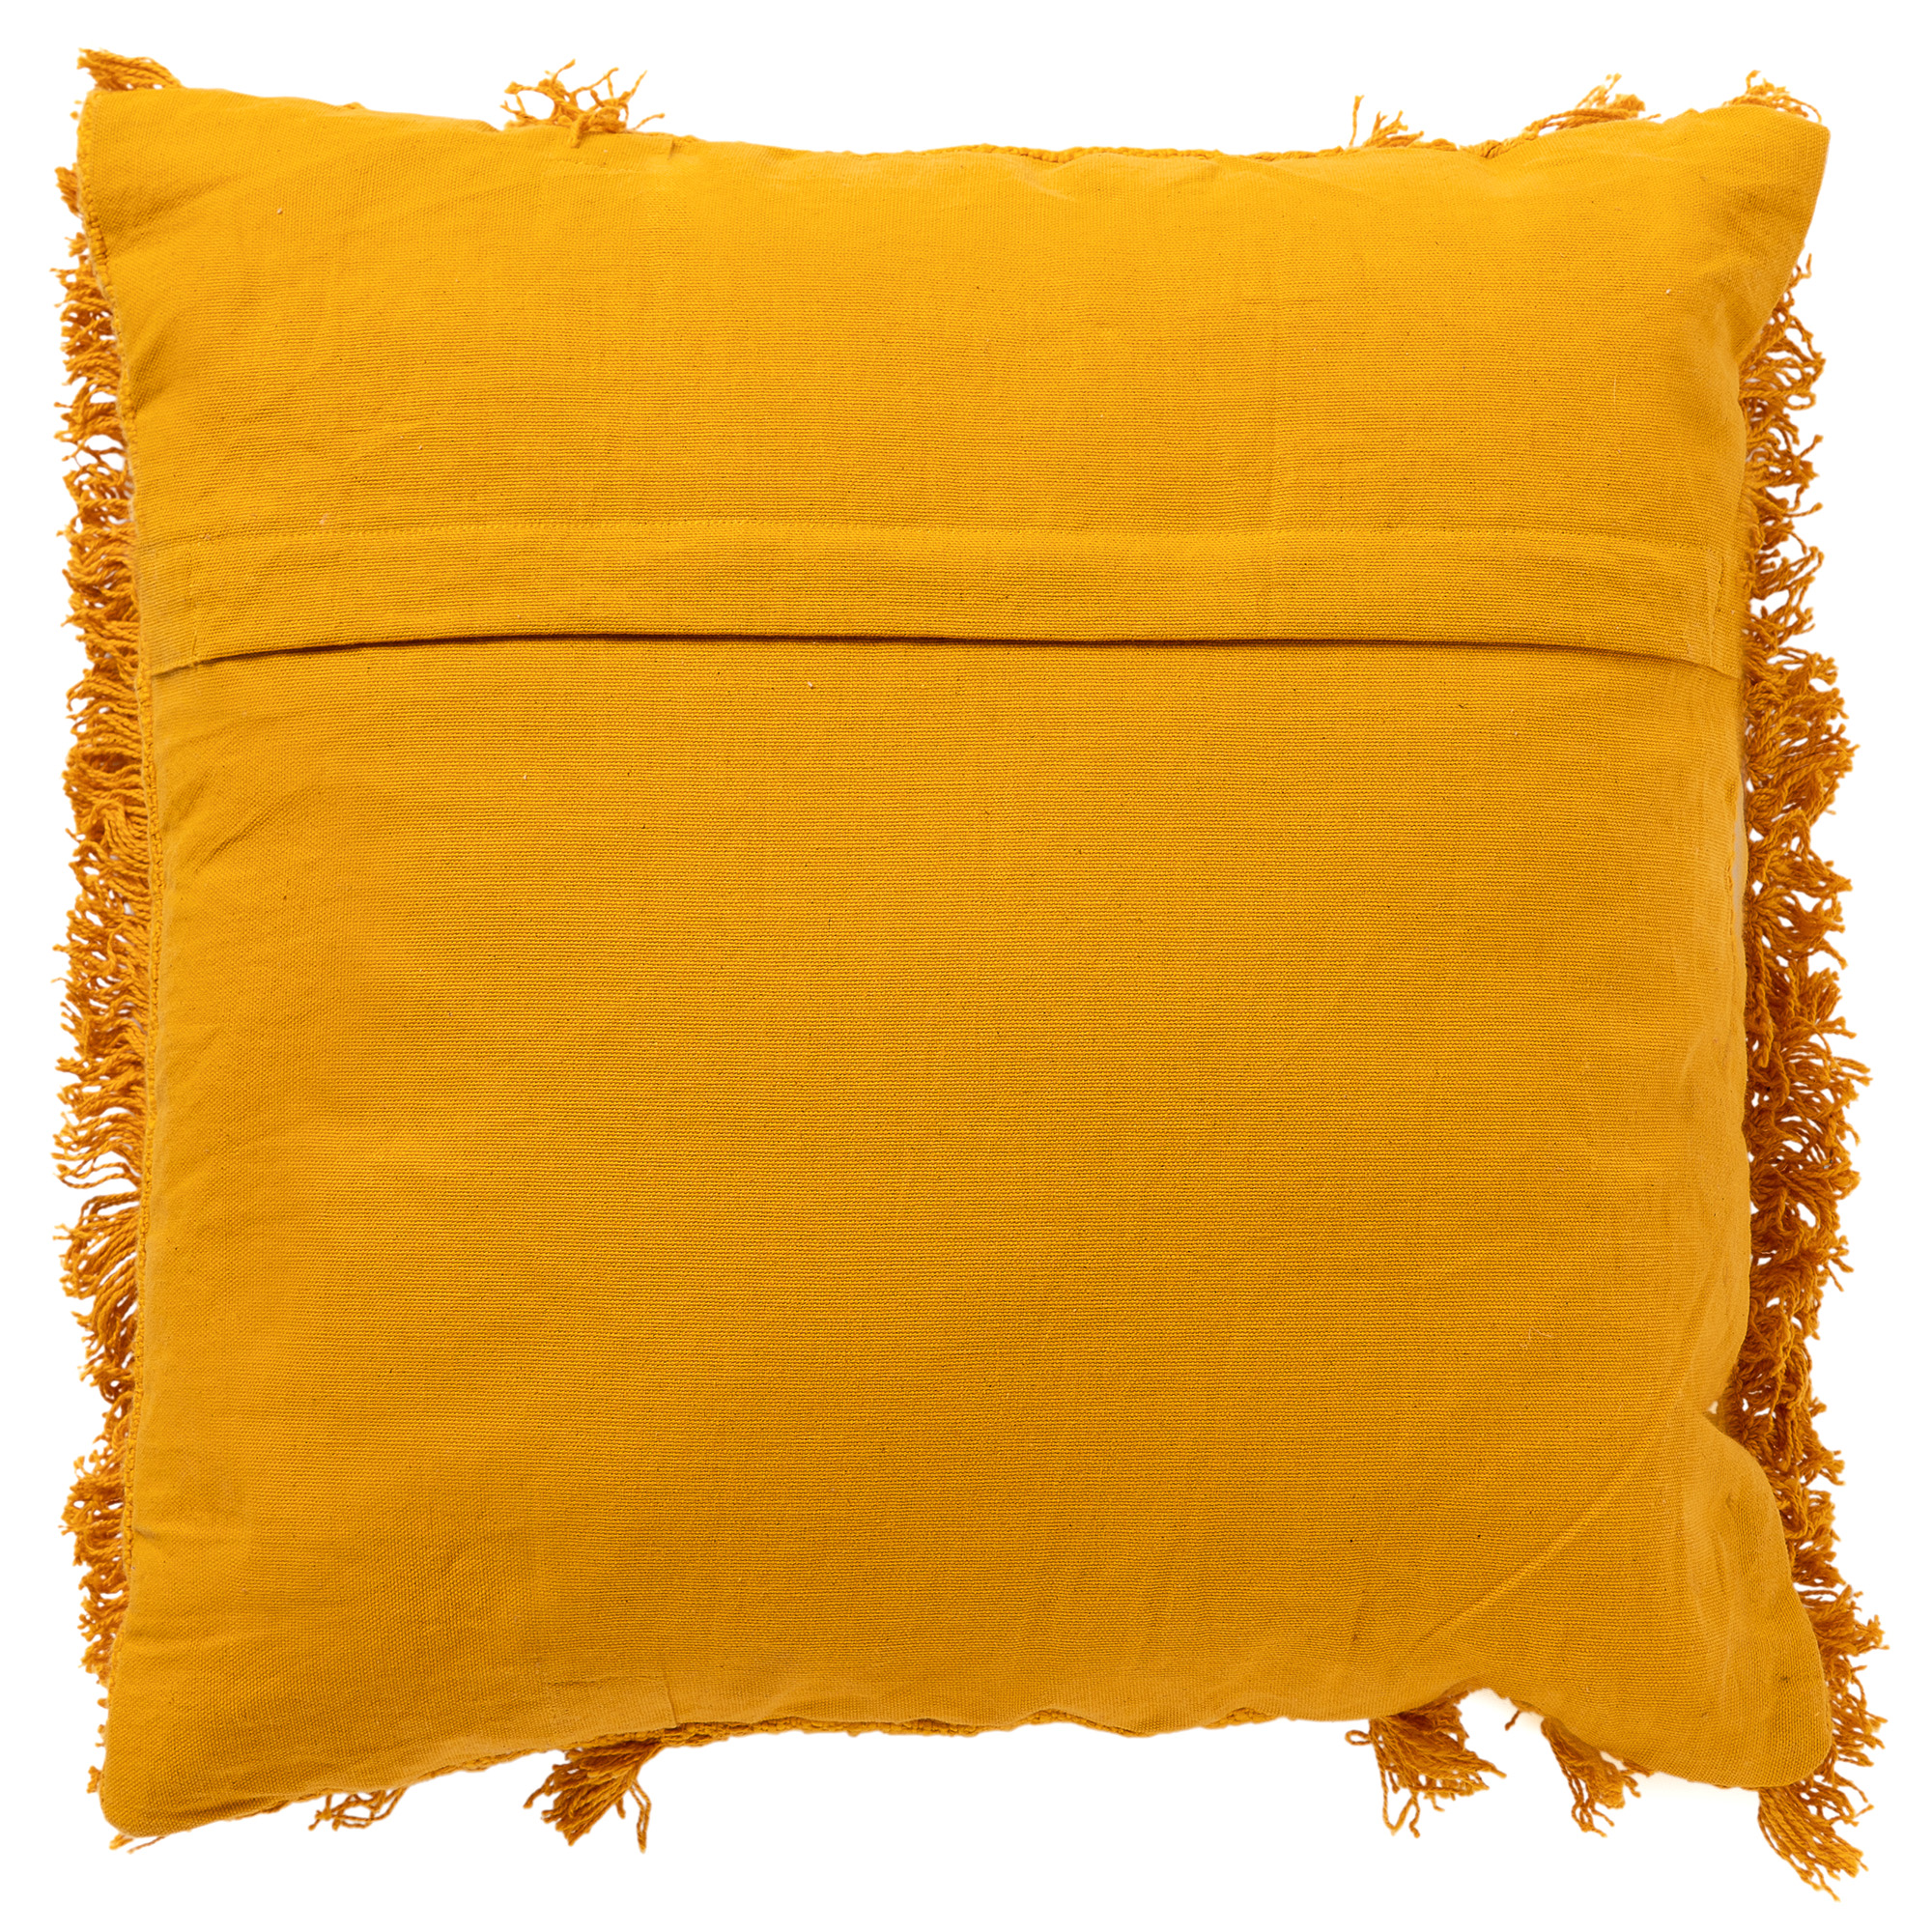 FARA - Sierkussen 45x45 cm - 100% katoen - met franjes - Golden Glow - geel